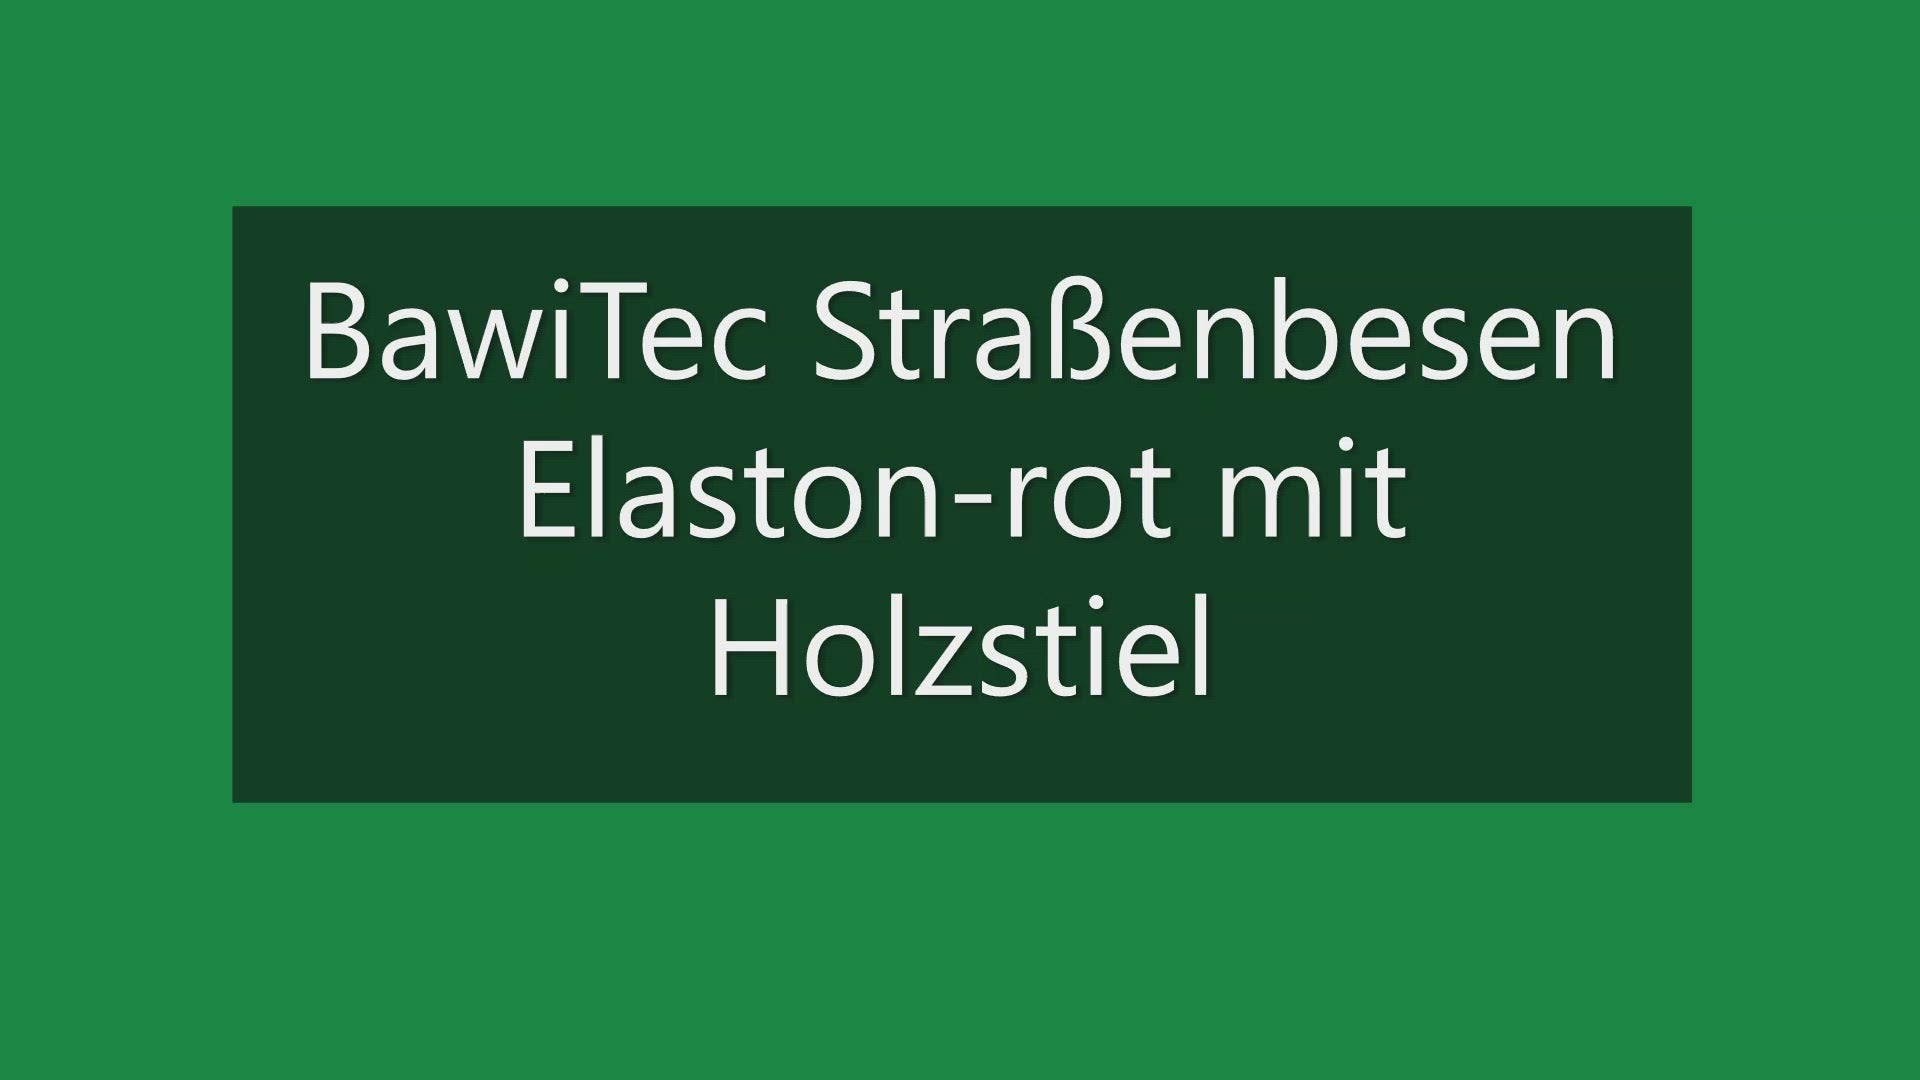 Profi Straßenbesen Elaston/Eralon-Kehrbesen Saalbesen Besen mit 28er-Stiel  – BawiTec- Badewien GbR Handel + Service